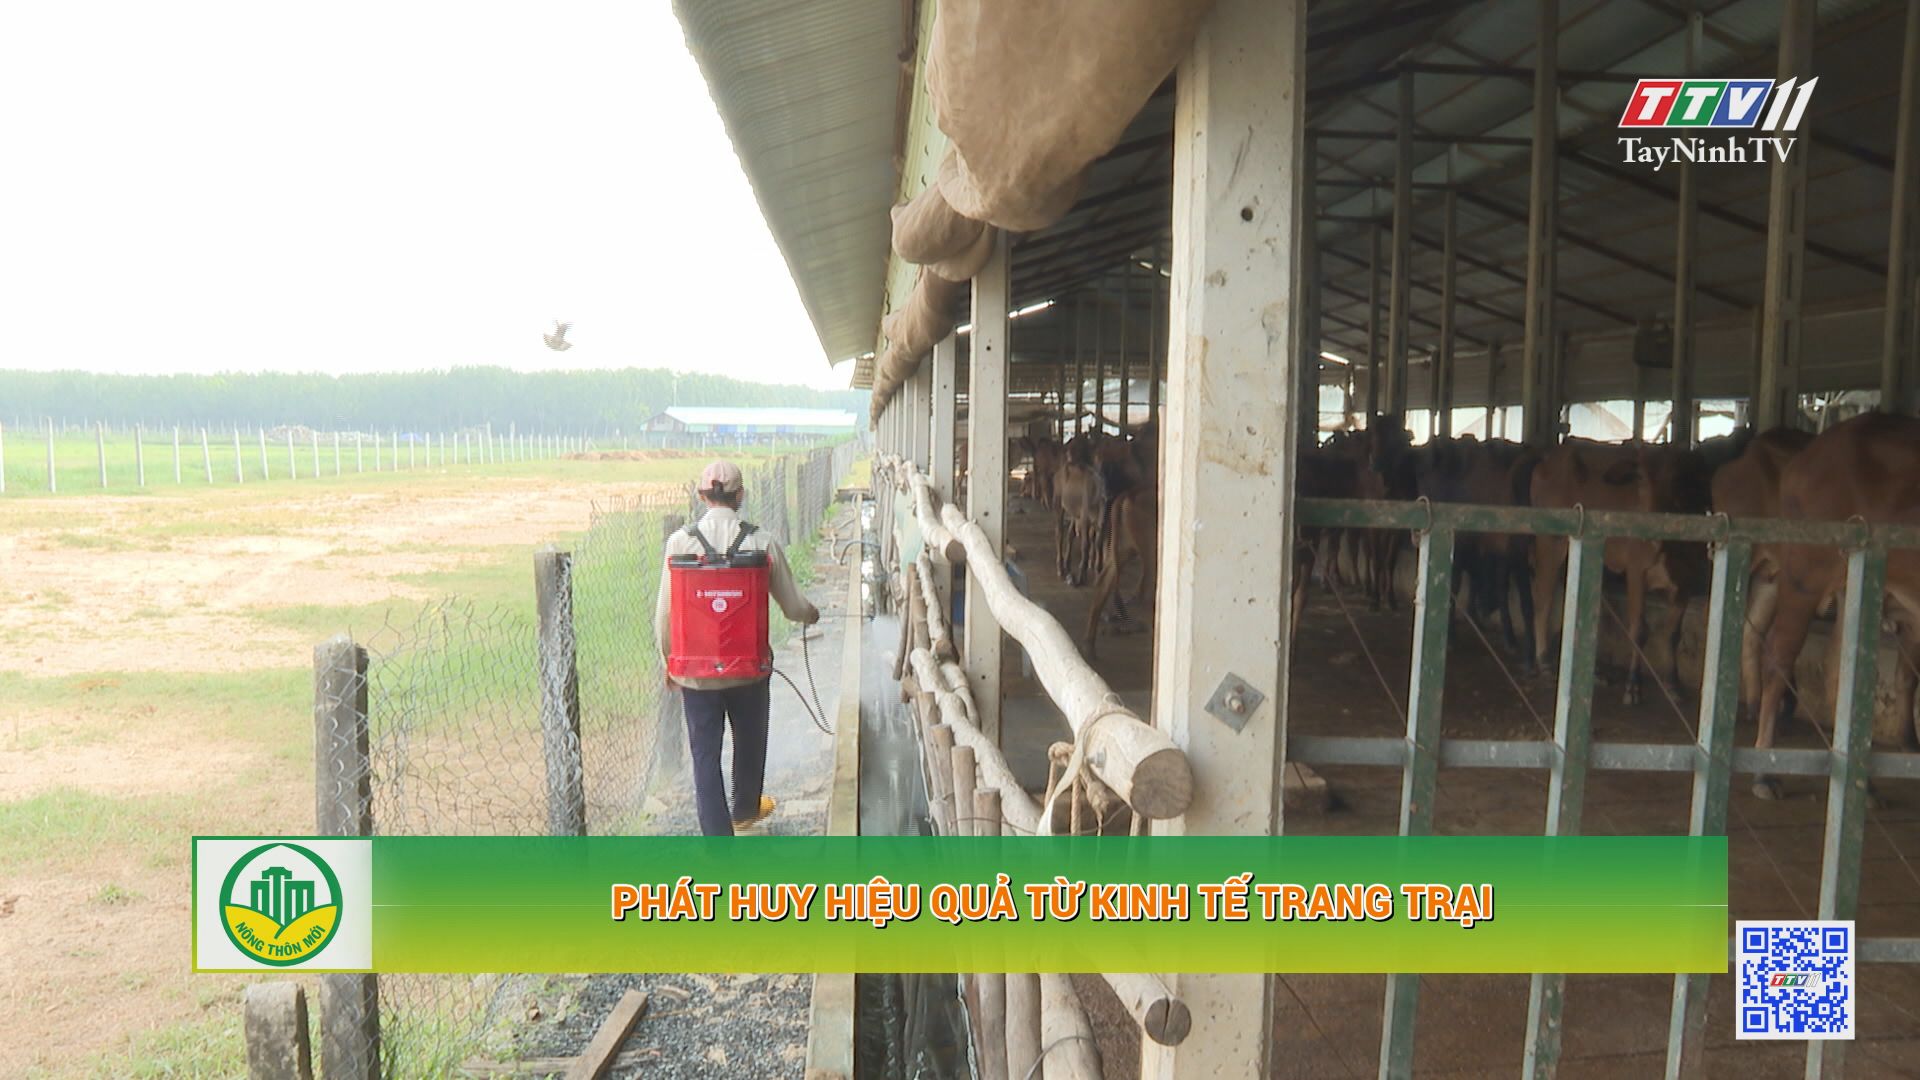 Phát huy hiệu quả từ kinh tế trang trại | Tây Ninh xây dựng nông thôn mới | TayNinhTV